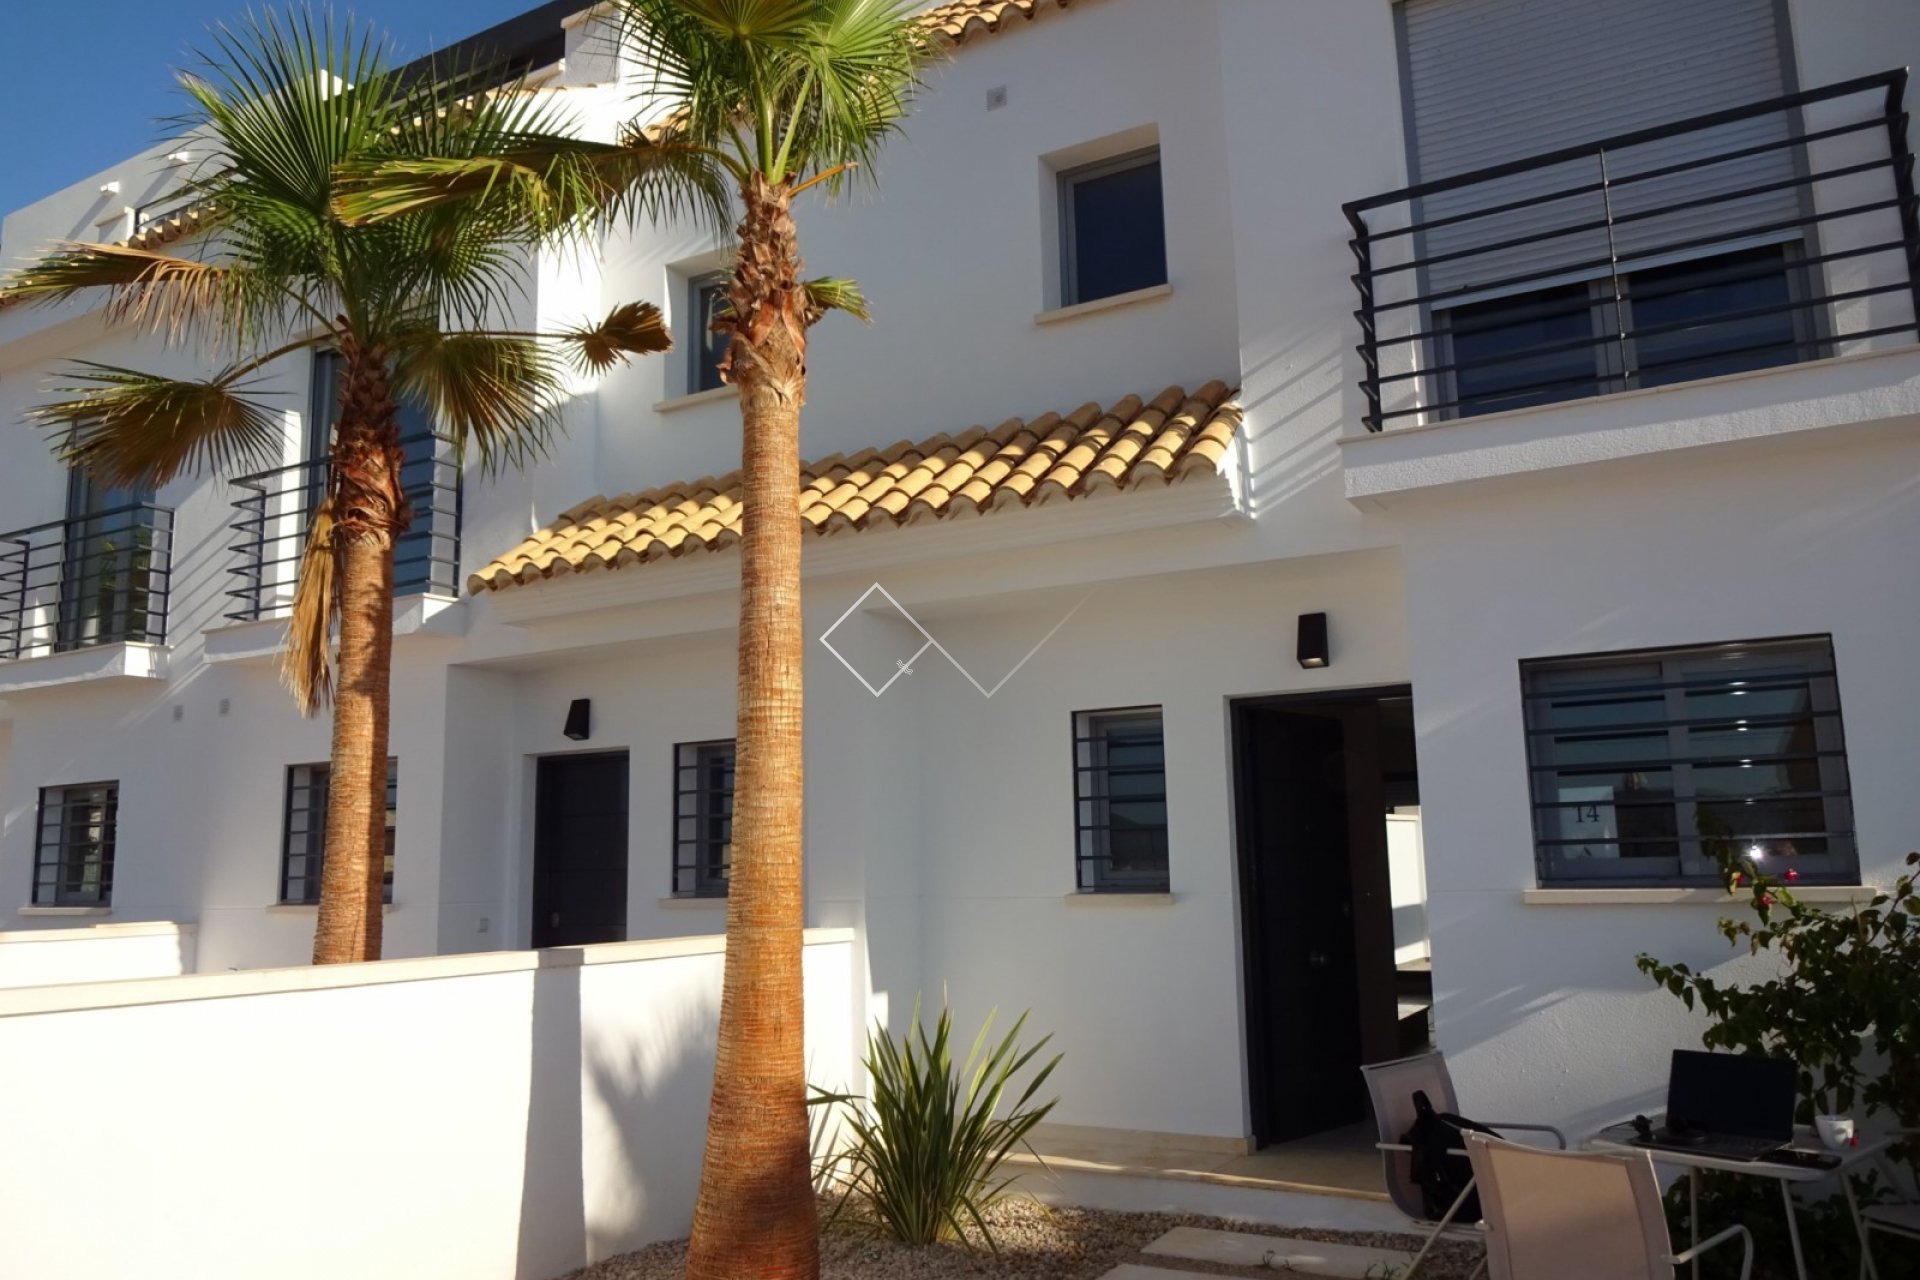 Huis met palmboom - Modern aangebouwd huis te koop met gemeenschappelijk zwembad en garage in Jesus Pobre